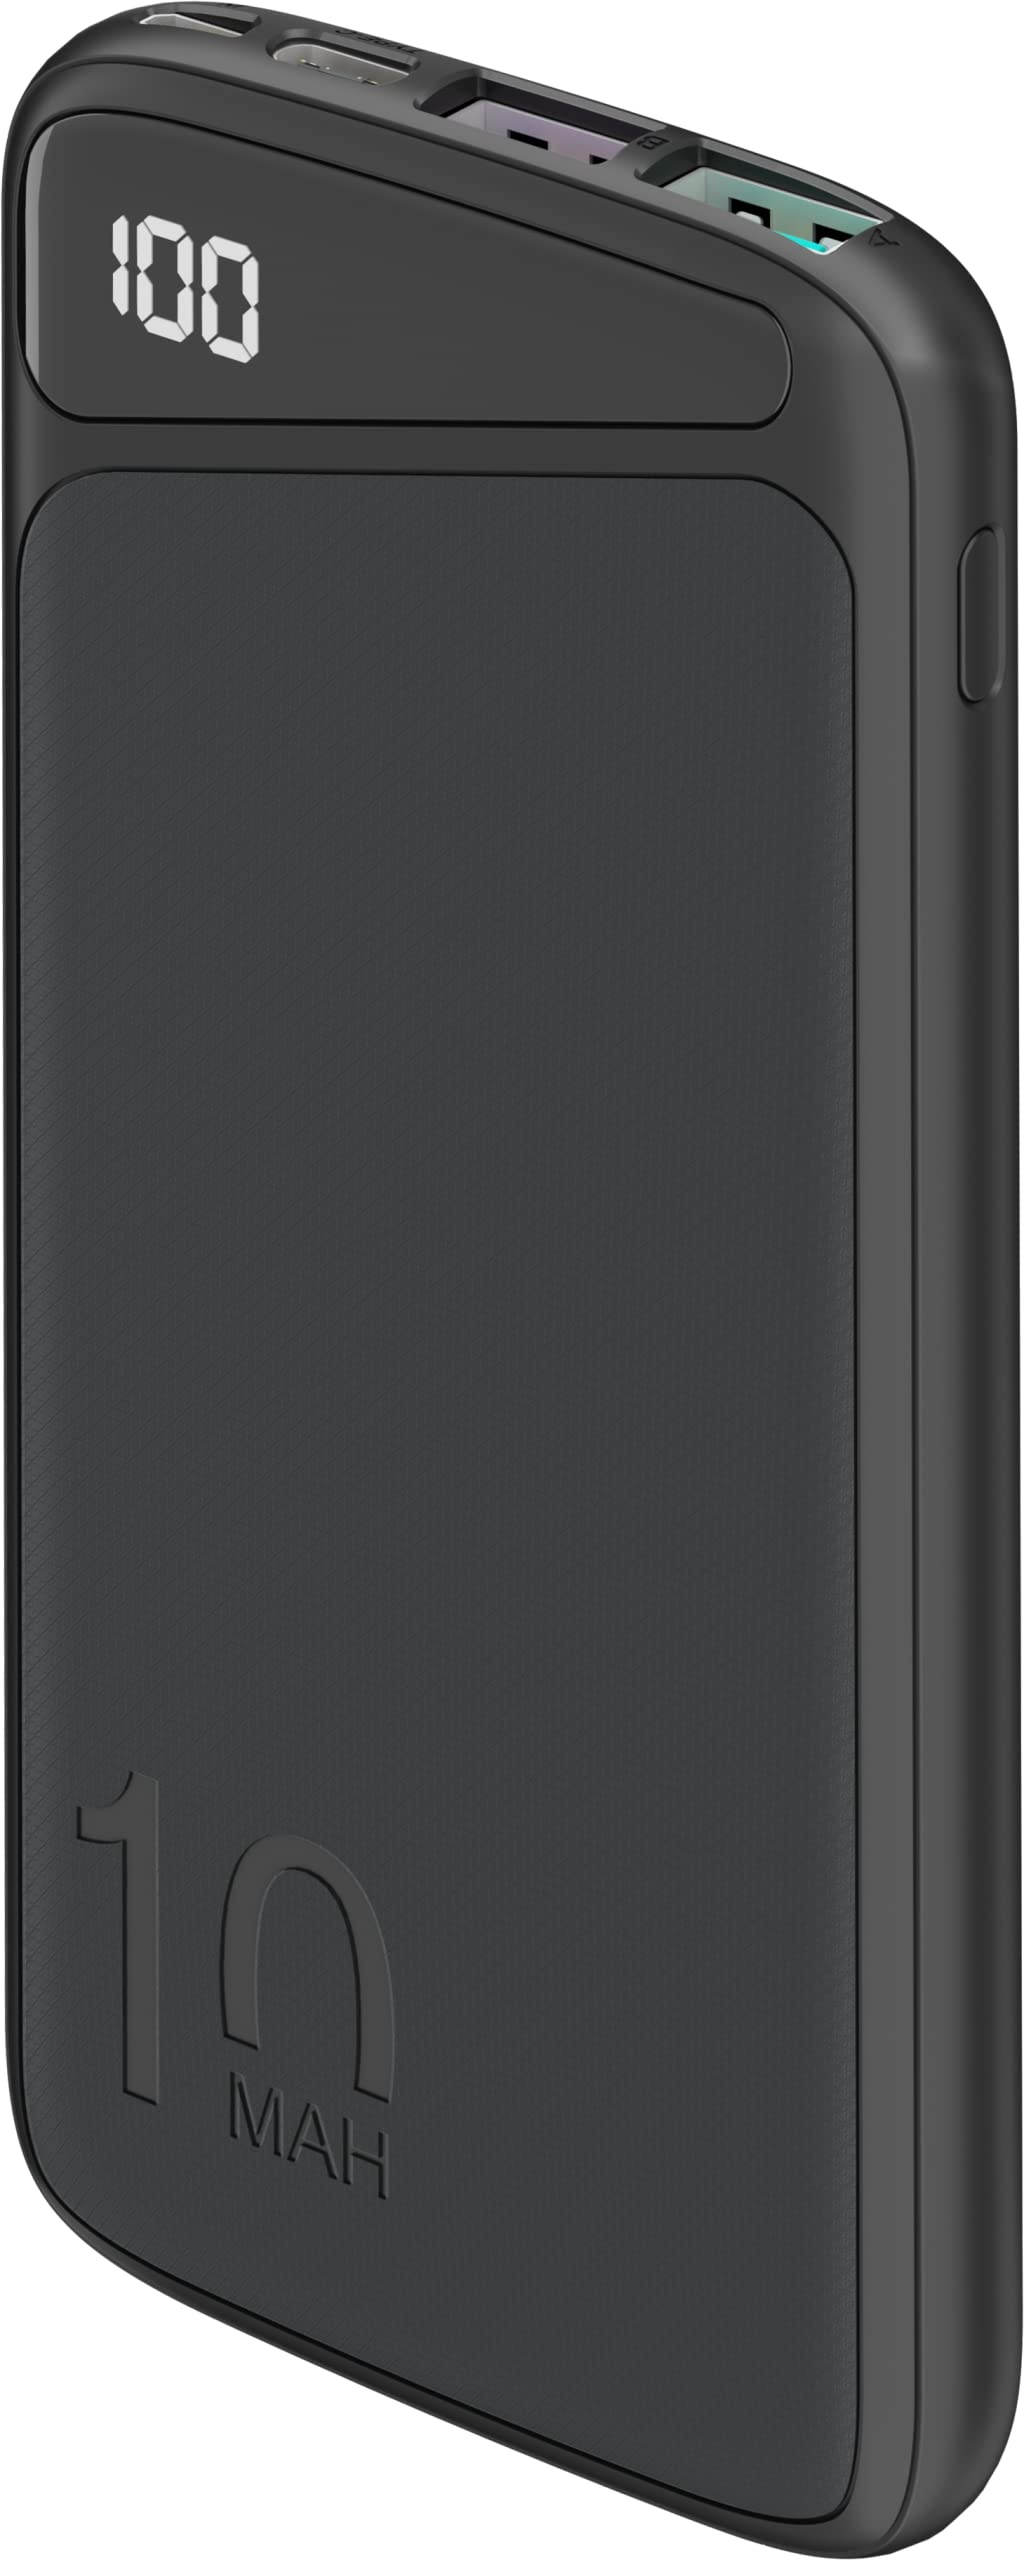 goobay 53936 QC 3.0 Powerbank 10.000 mAh mit Schnellladefunktion/Externer Akku/Power Bank für Smartphone & Tablet/Ladegerät Powerpack mit 2 USB-A Ports, Schwarz, Kompakt